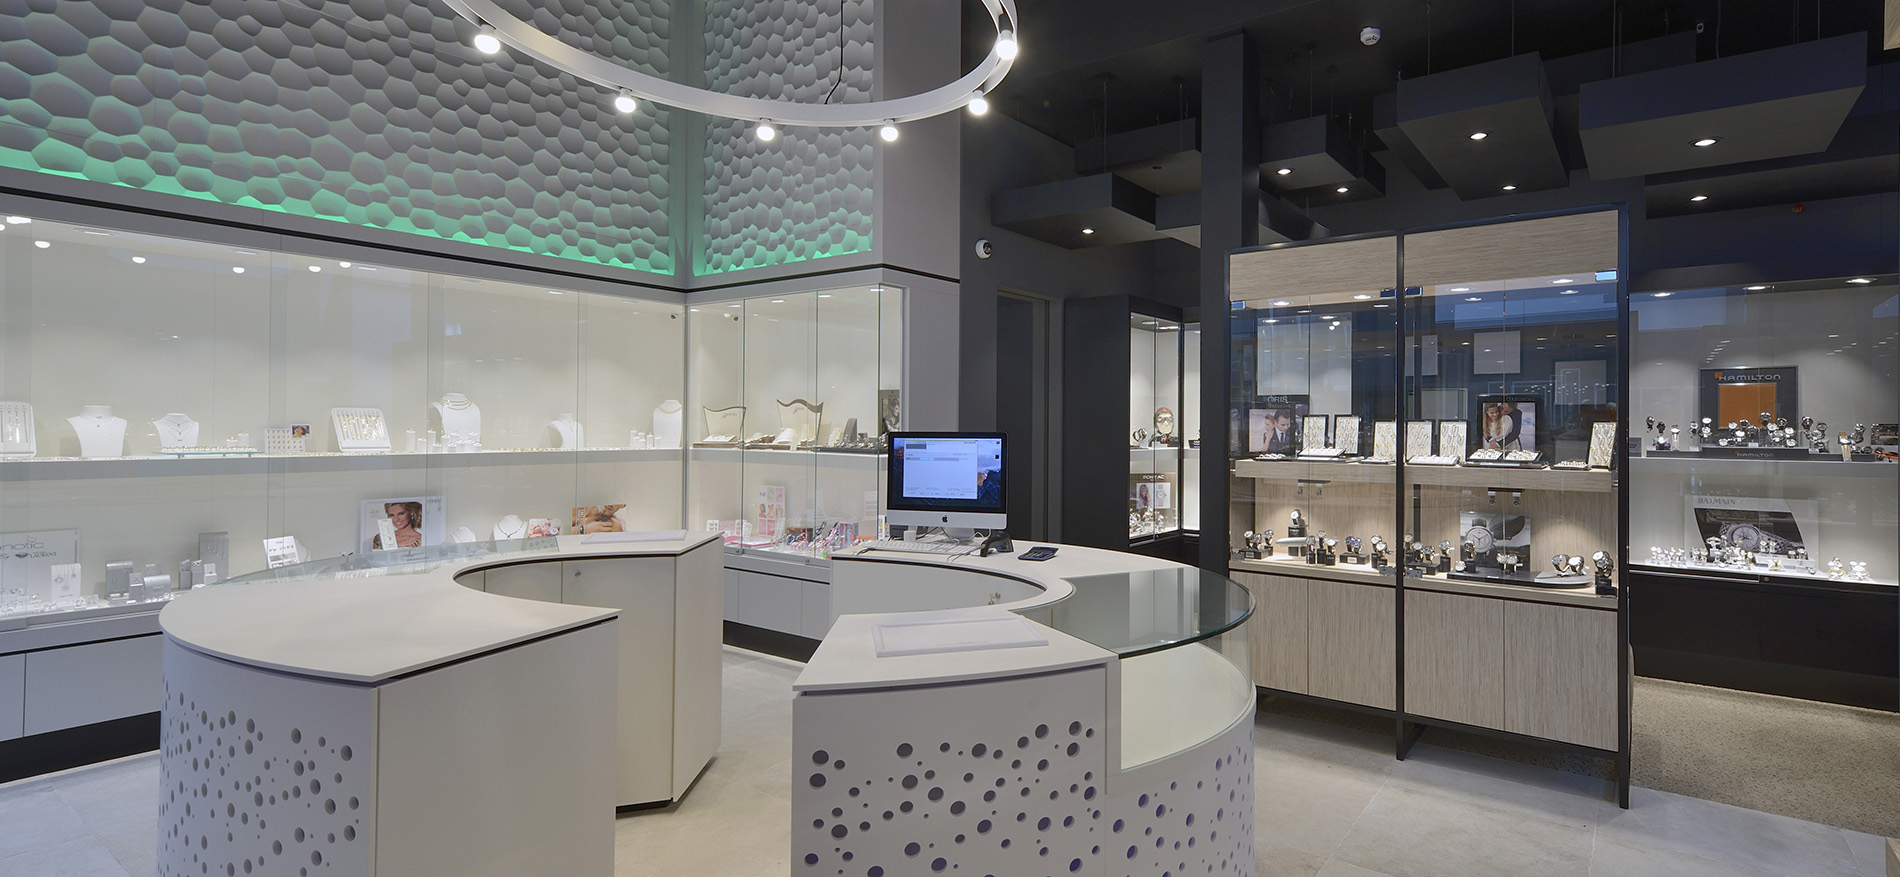 Bijouterie Laurent: Retail design of jewelry shop - 